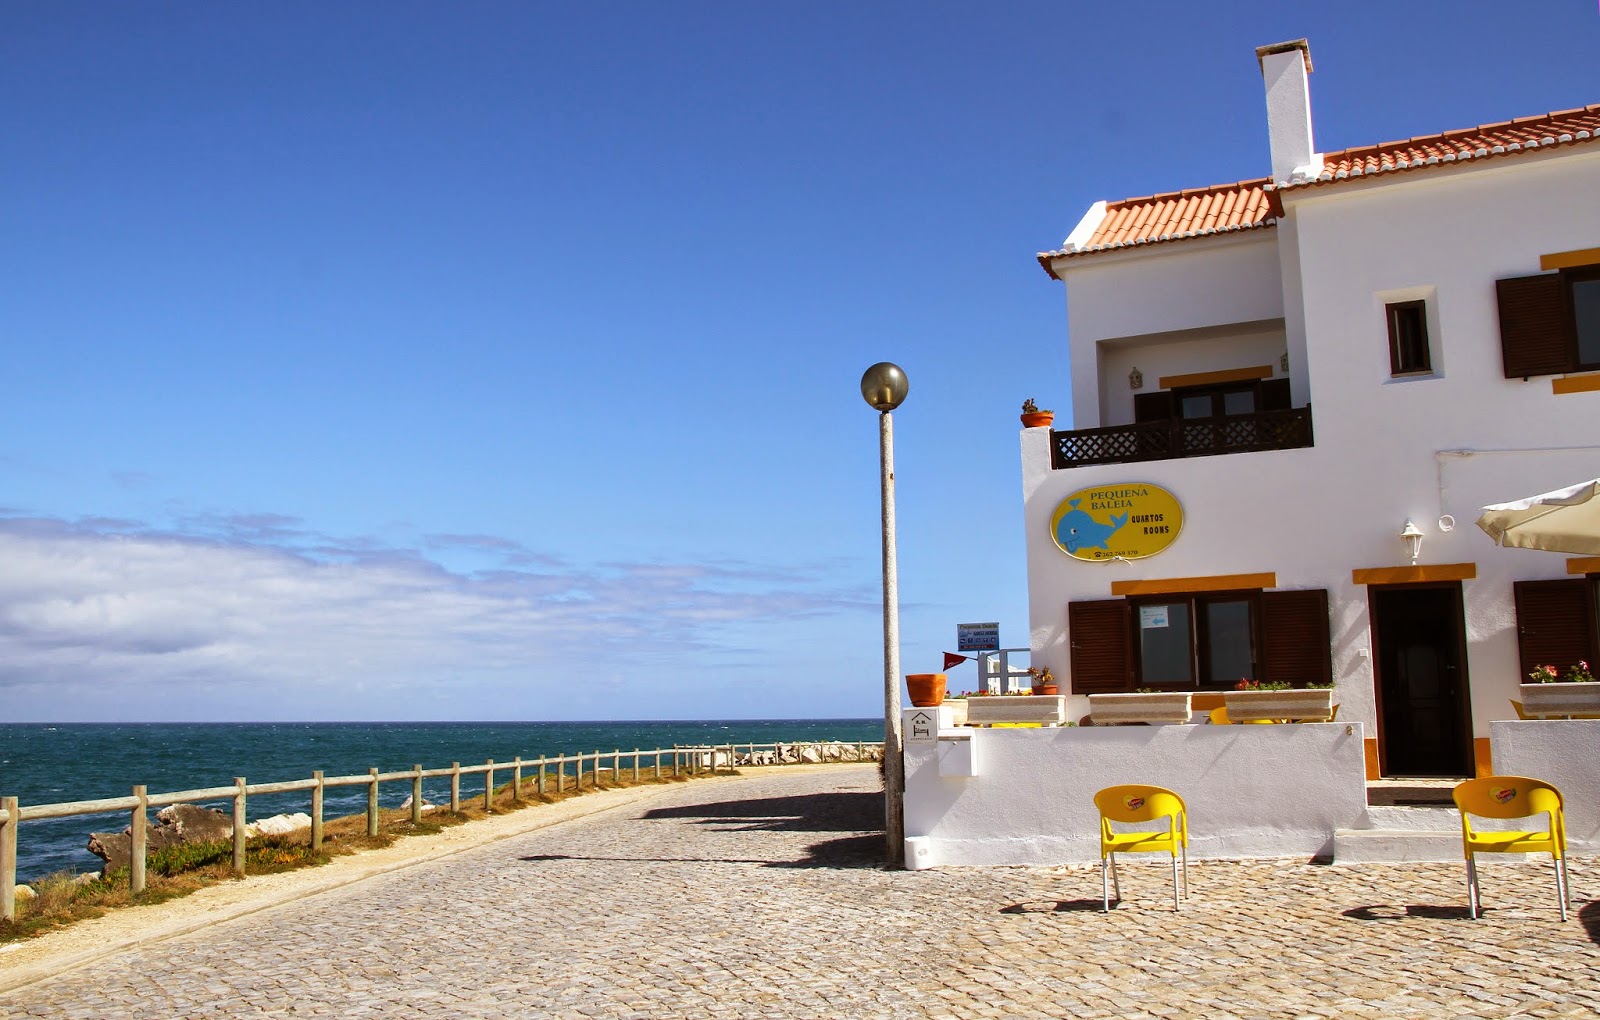 O magnífico destino de férias no Baleal - Da Pequena Baleia eu vejo o Baleal | Portugal